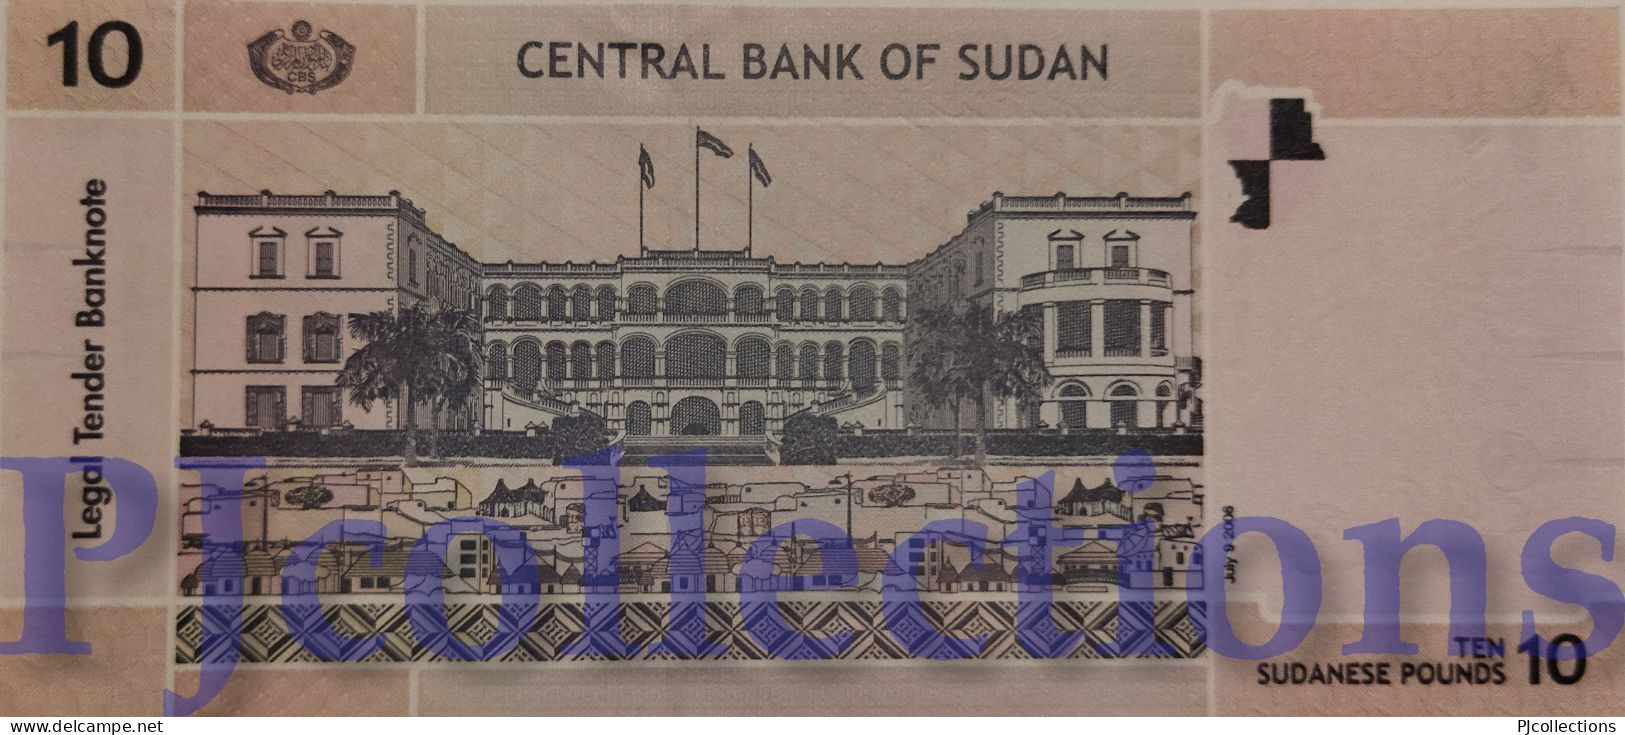 SUDAN 10 POUNDS 2006 PICK 67 UNC - Sudan